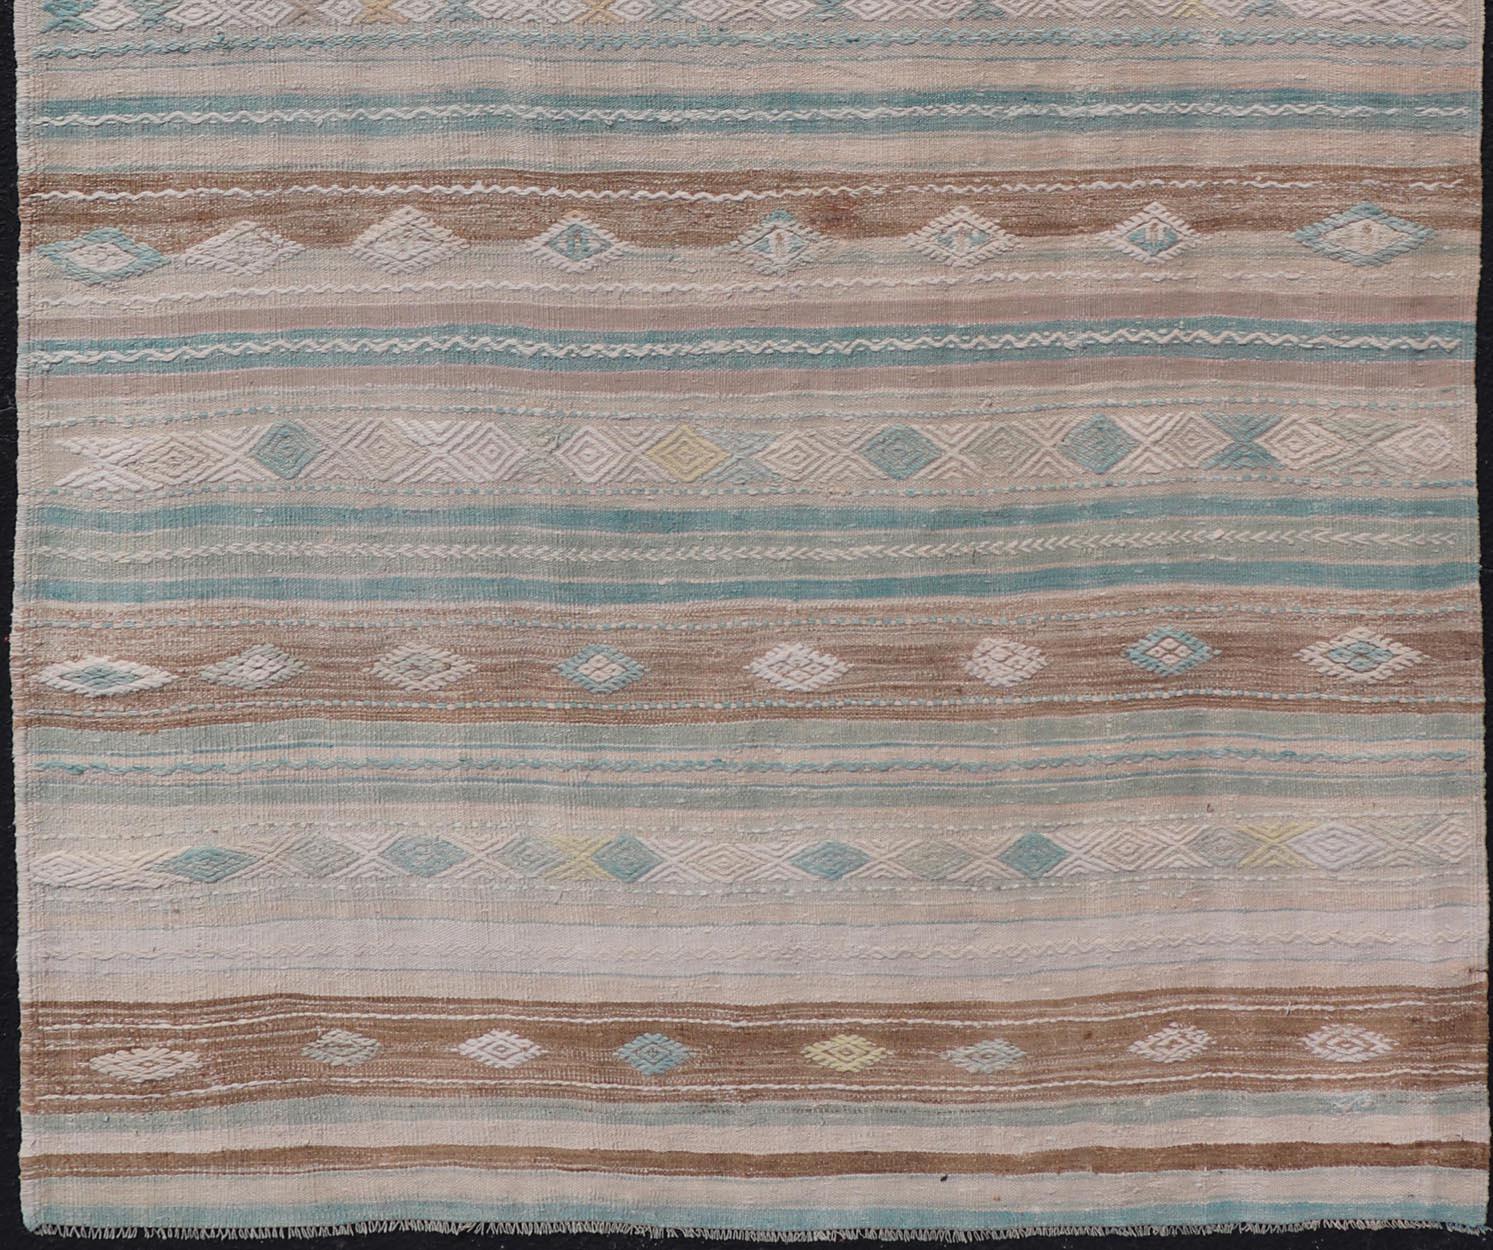 Türkischer Kelim-Vintage-Teppich aus hellem Taupe, grün von Meerschaum, hellbraun und cremefarben,
Gewebter Kunst-/Teppich EN-13956, Herkunftsland/Typ: Türkei/Kelim, um 1950

Maße: 2'2 x 9'8 cm (5'2 x 9'8